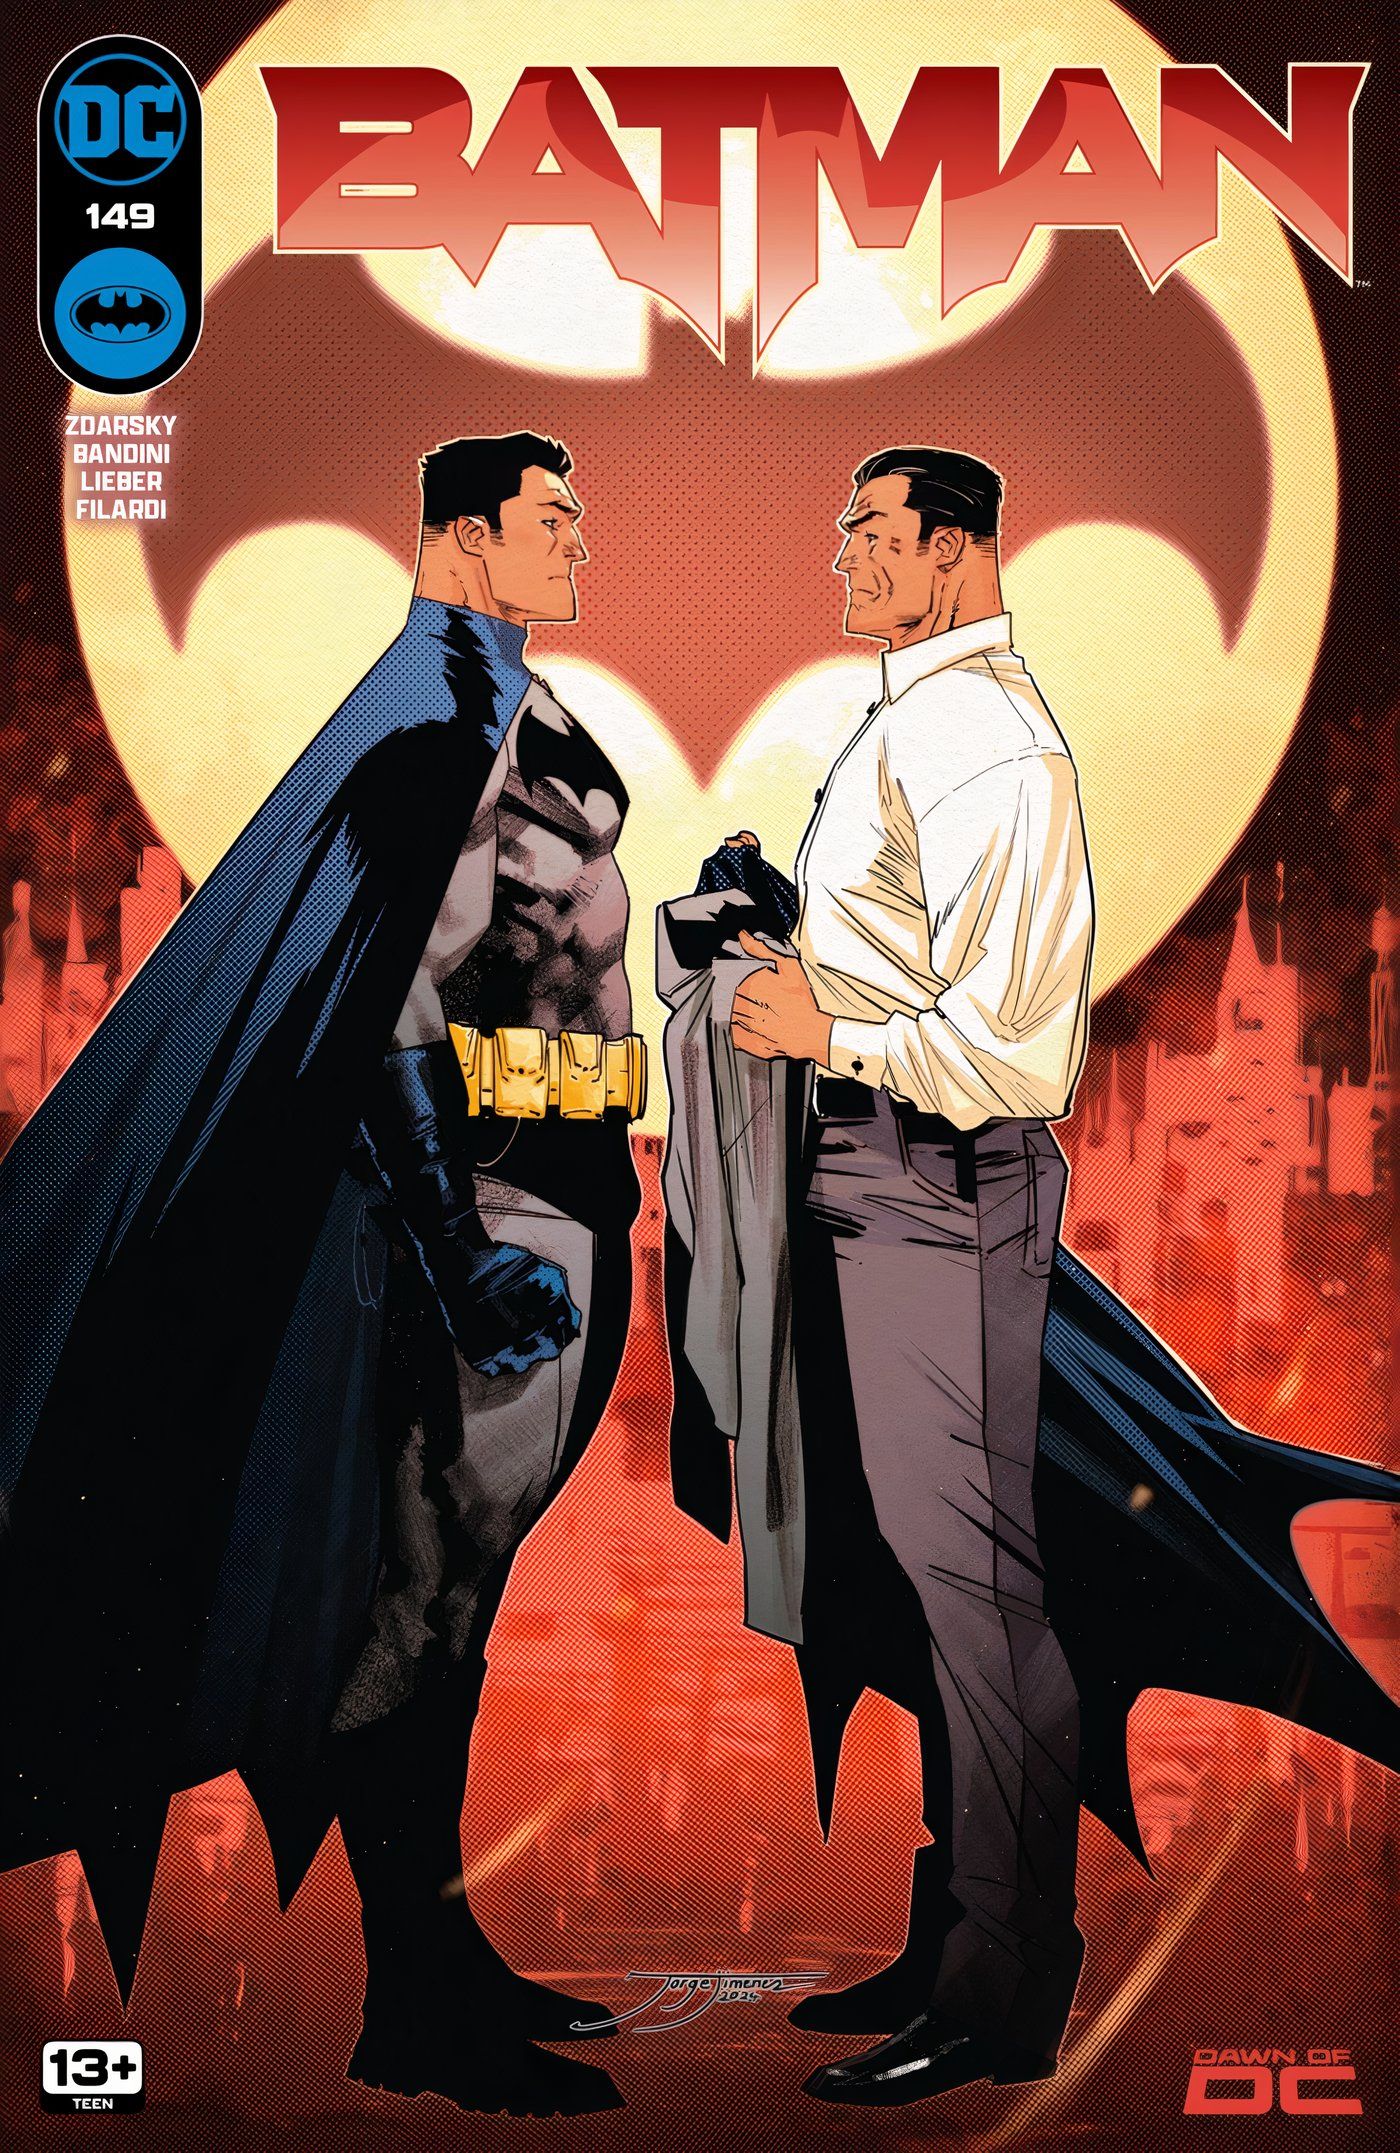 Capa principal do Batman 149: Batman enfrentando um Bruce Wayne mais velho em frente ao Bat-Sinal.